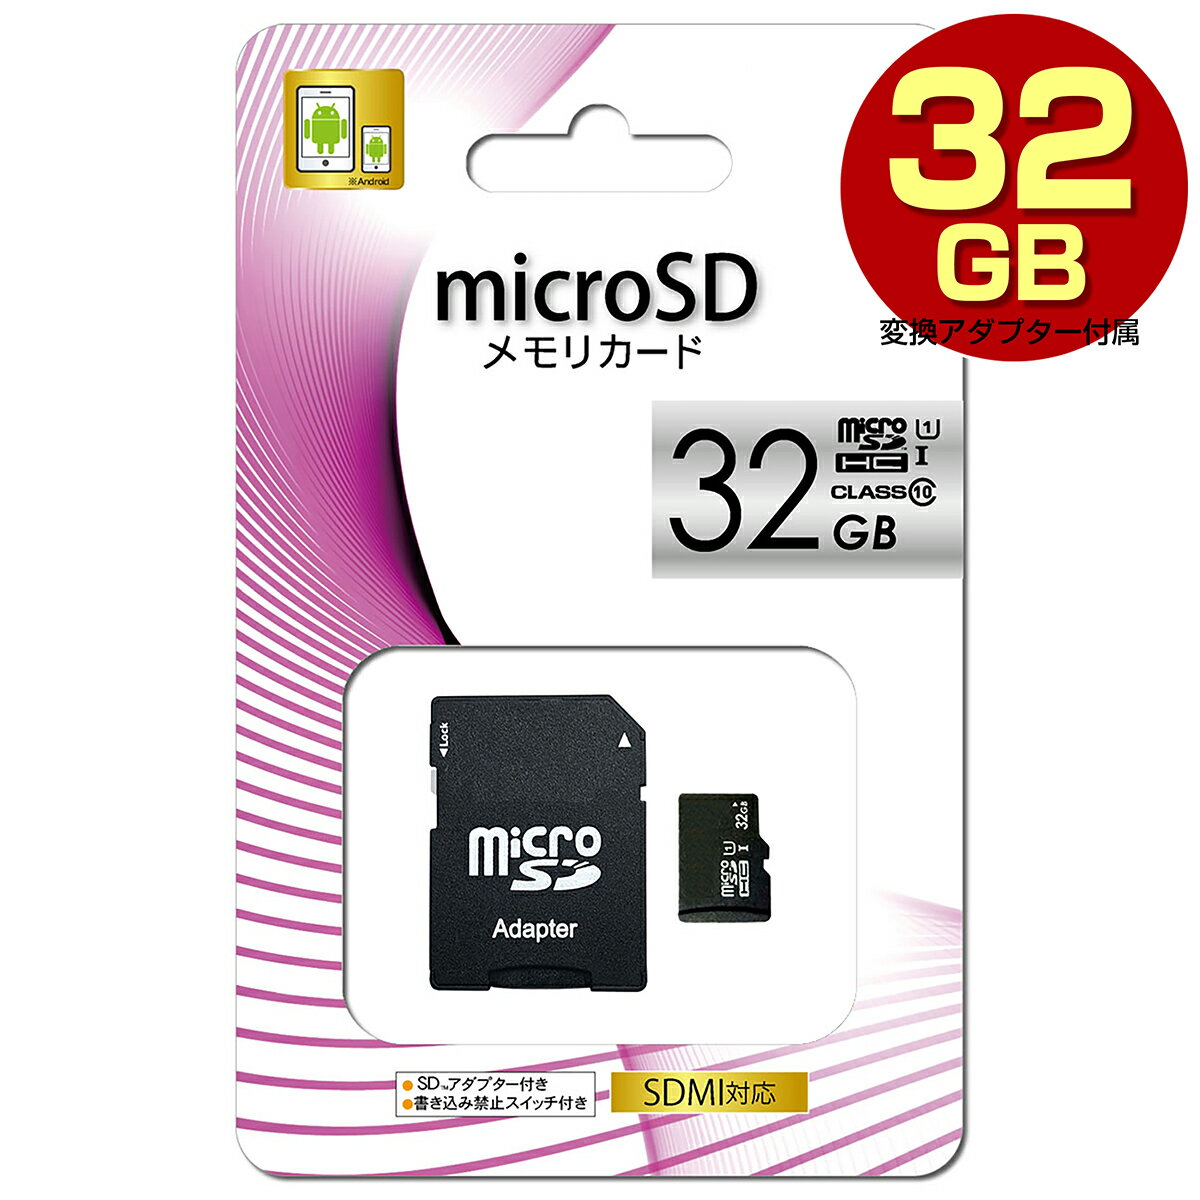 台湾製 microSDHC マイクロ SDカード メモリーカード 32GB UHS-I CLASS10 クラス10 UHS-1 microSD アダプター付 スマートフォン スマホ ドライブレコーダー デジカメ 防犯カメラ 【送料無料】